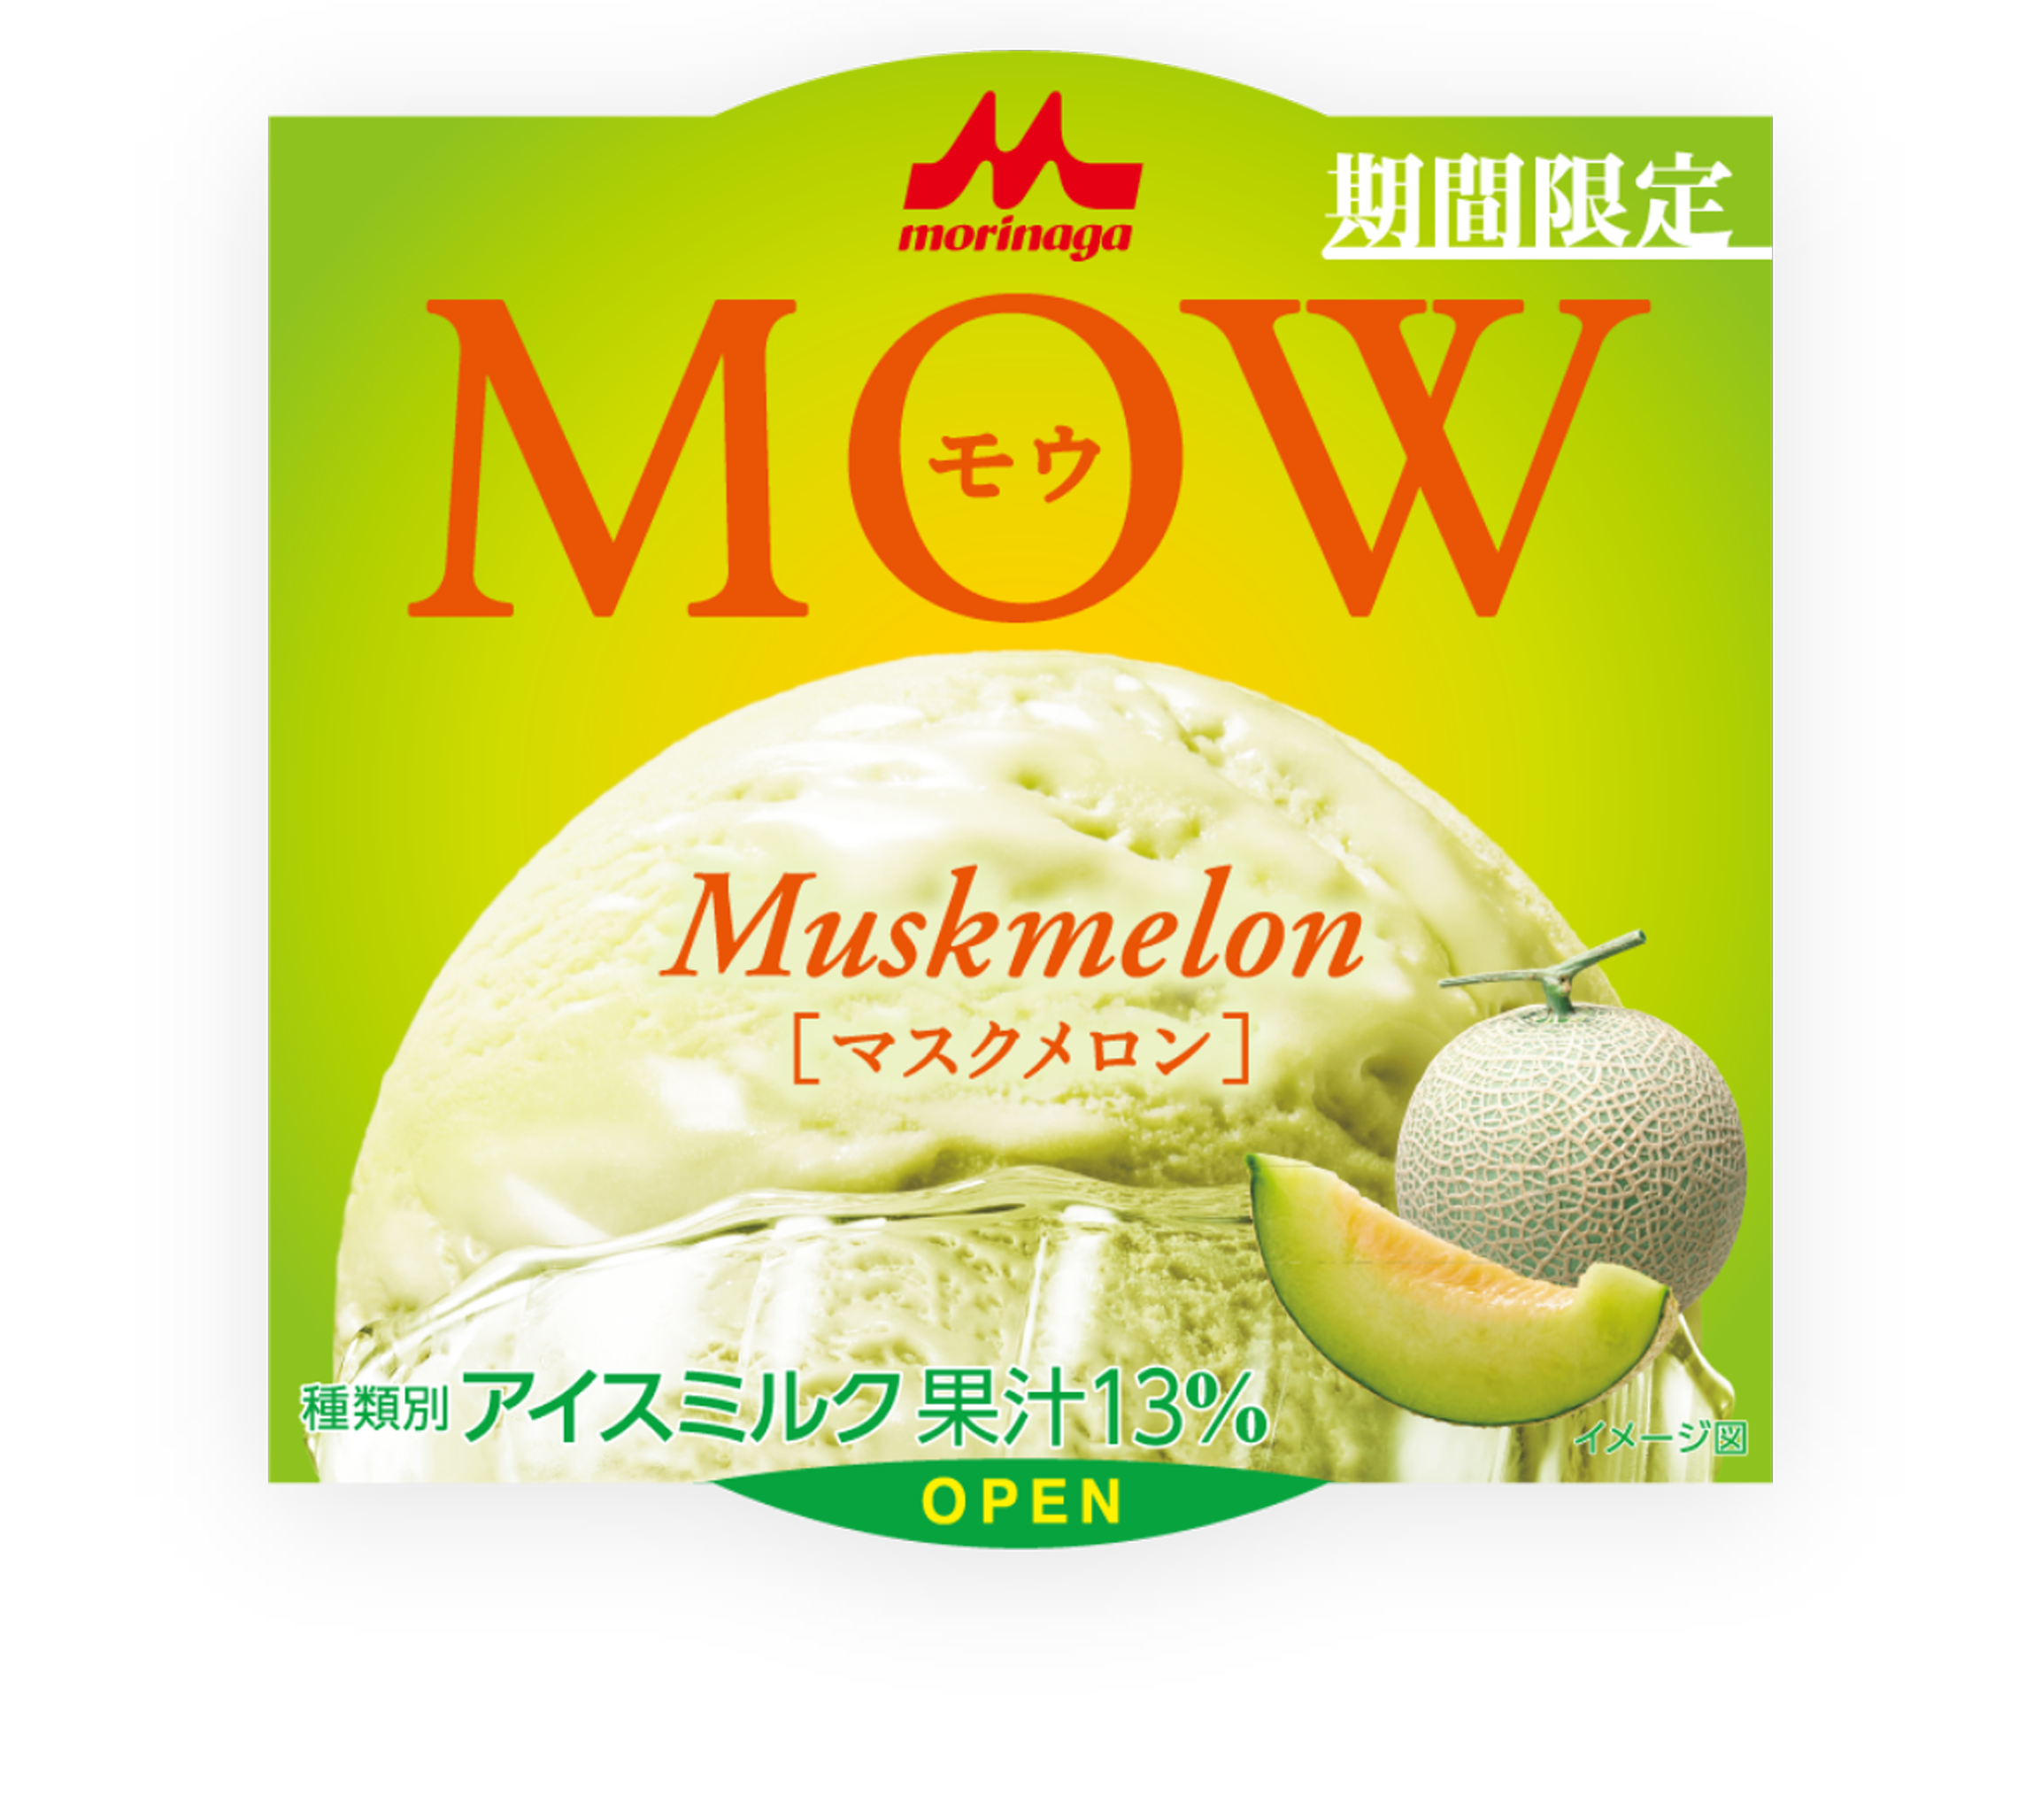 「MOW」←このアイスクリーム、安くてうまい